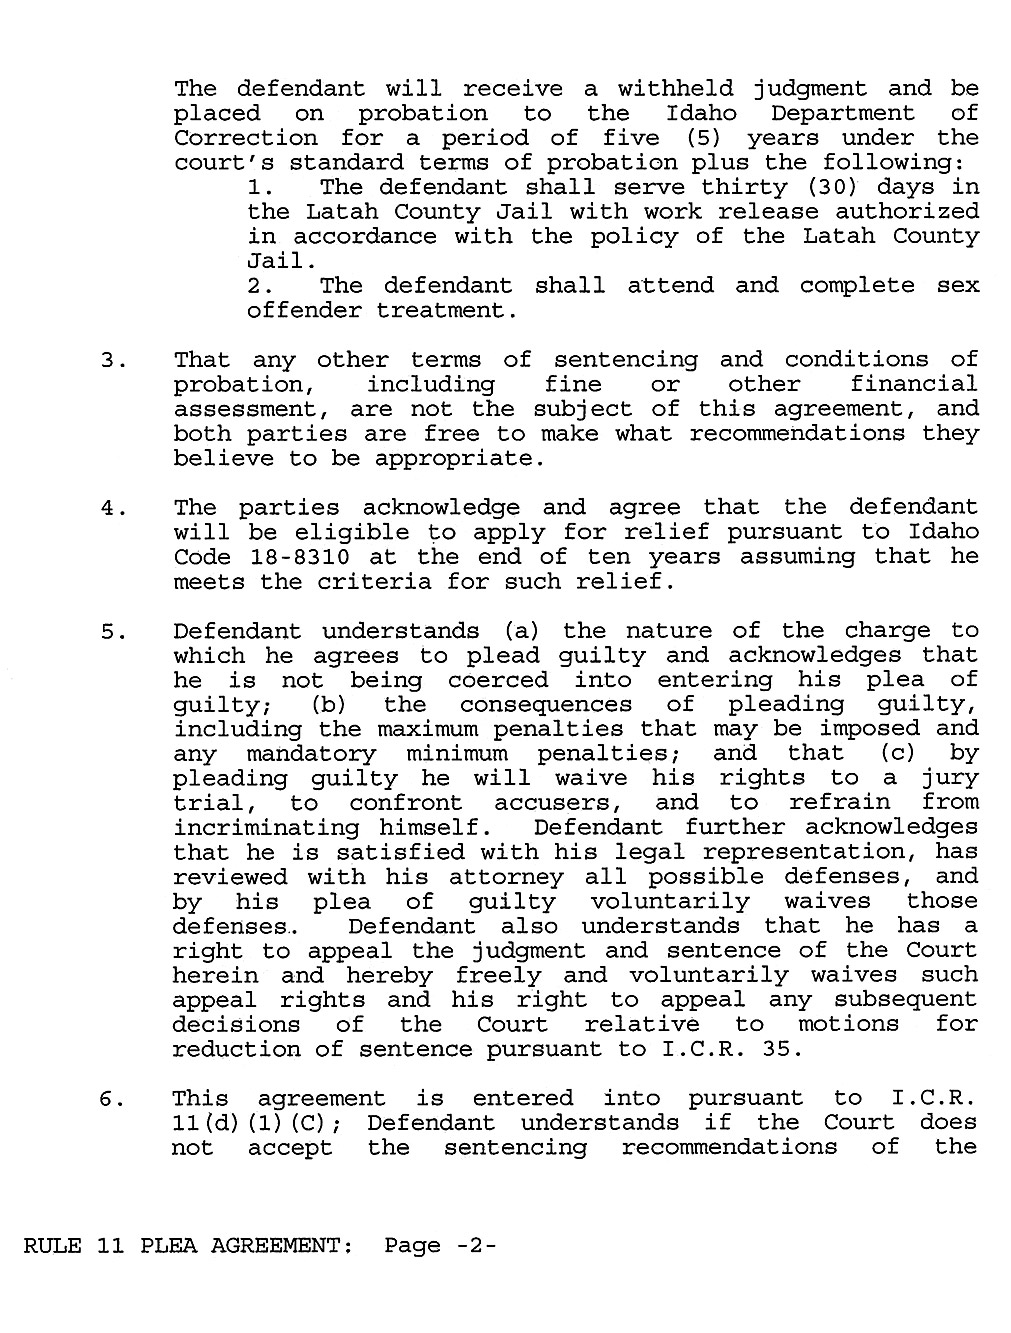 Rule 11 Plea Agreement page 2